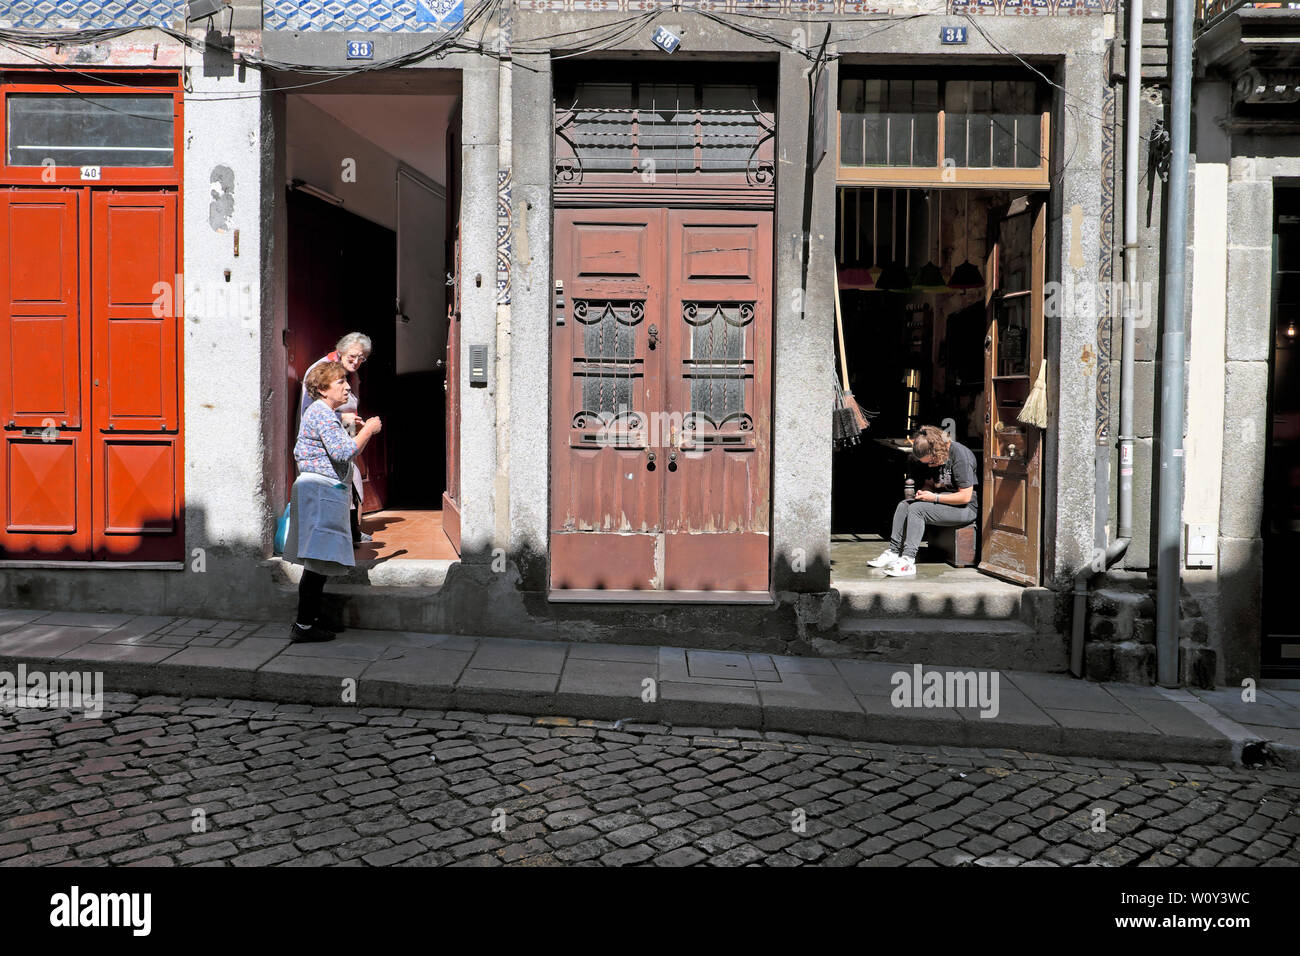 Porto vicini due donne anziane in chat a pochi passi e la giovane donna seduta da aprire la porta del negozio in una strada di Oporto portogallo Europa KATHY DEWITT Foto Stock